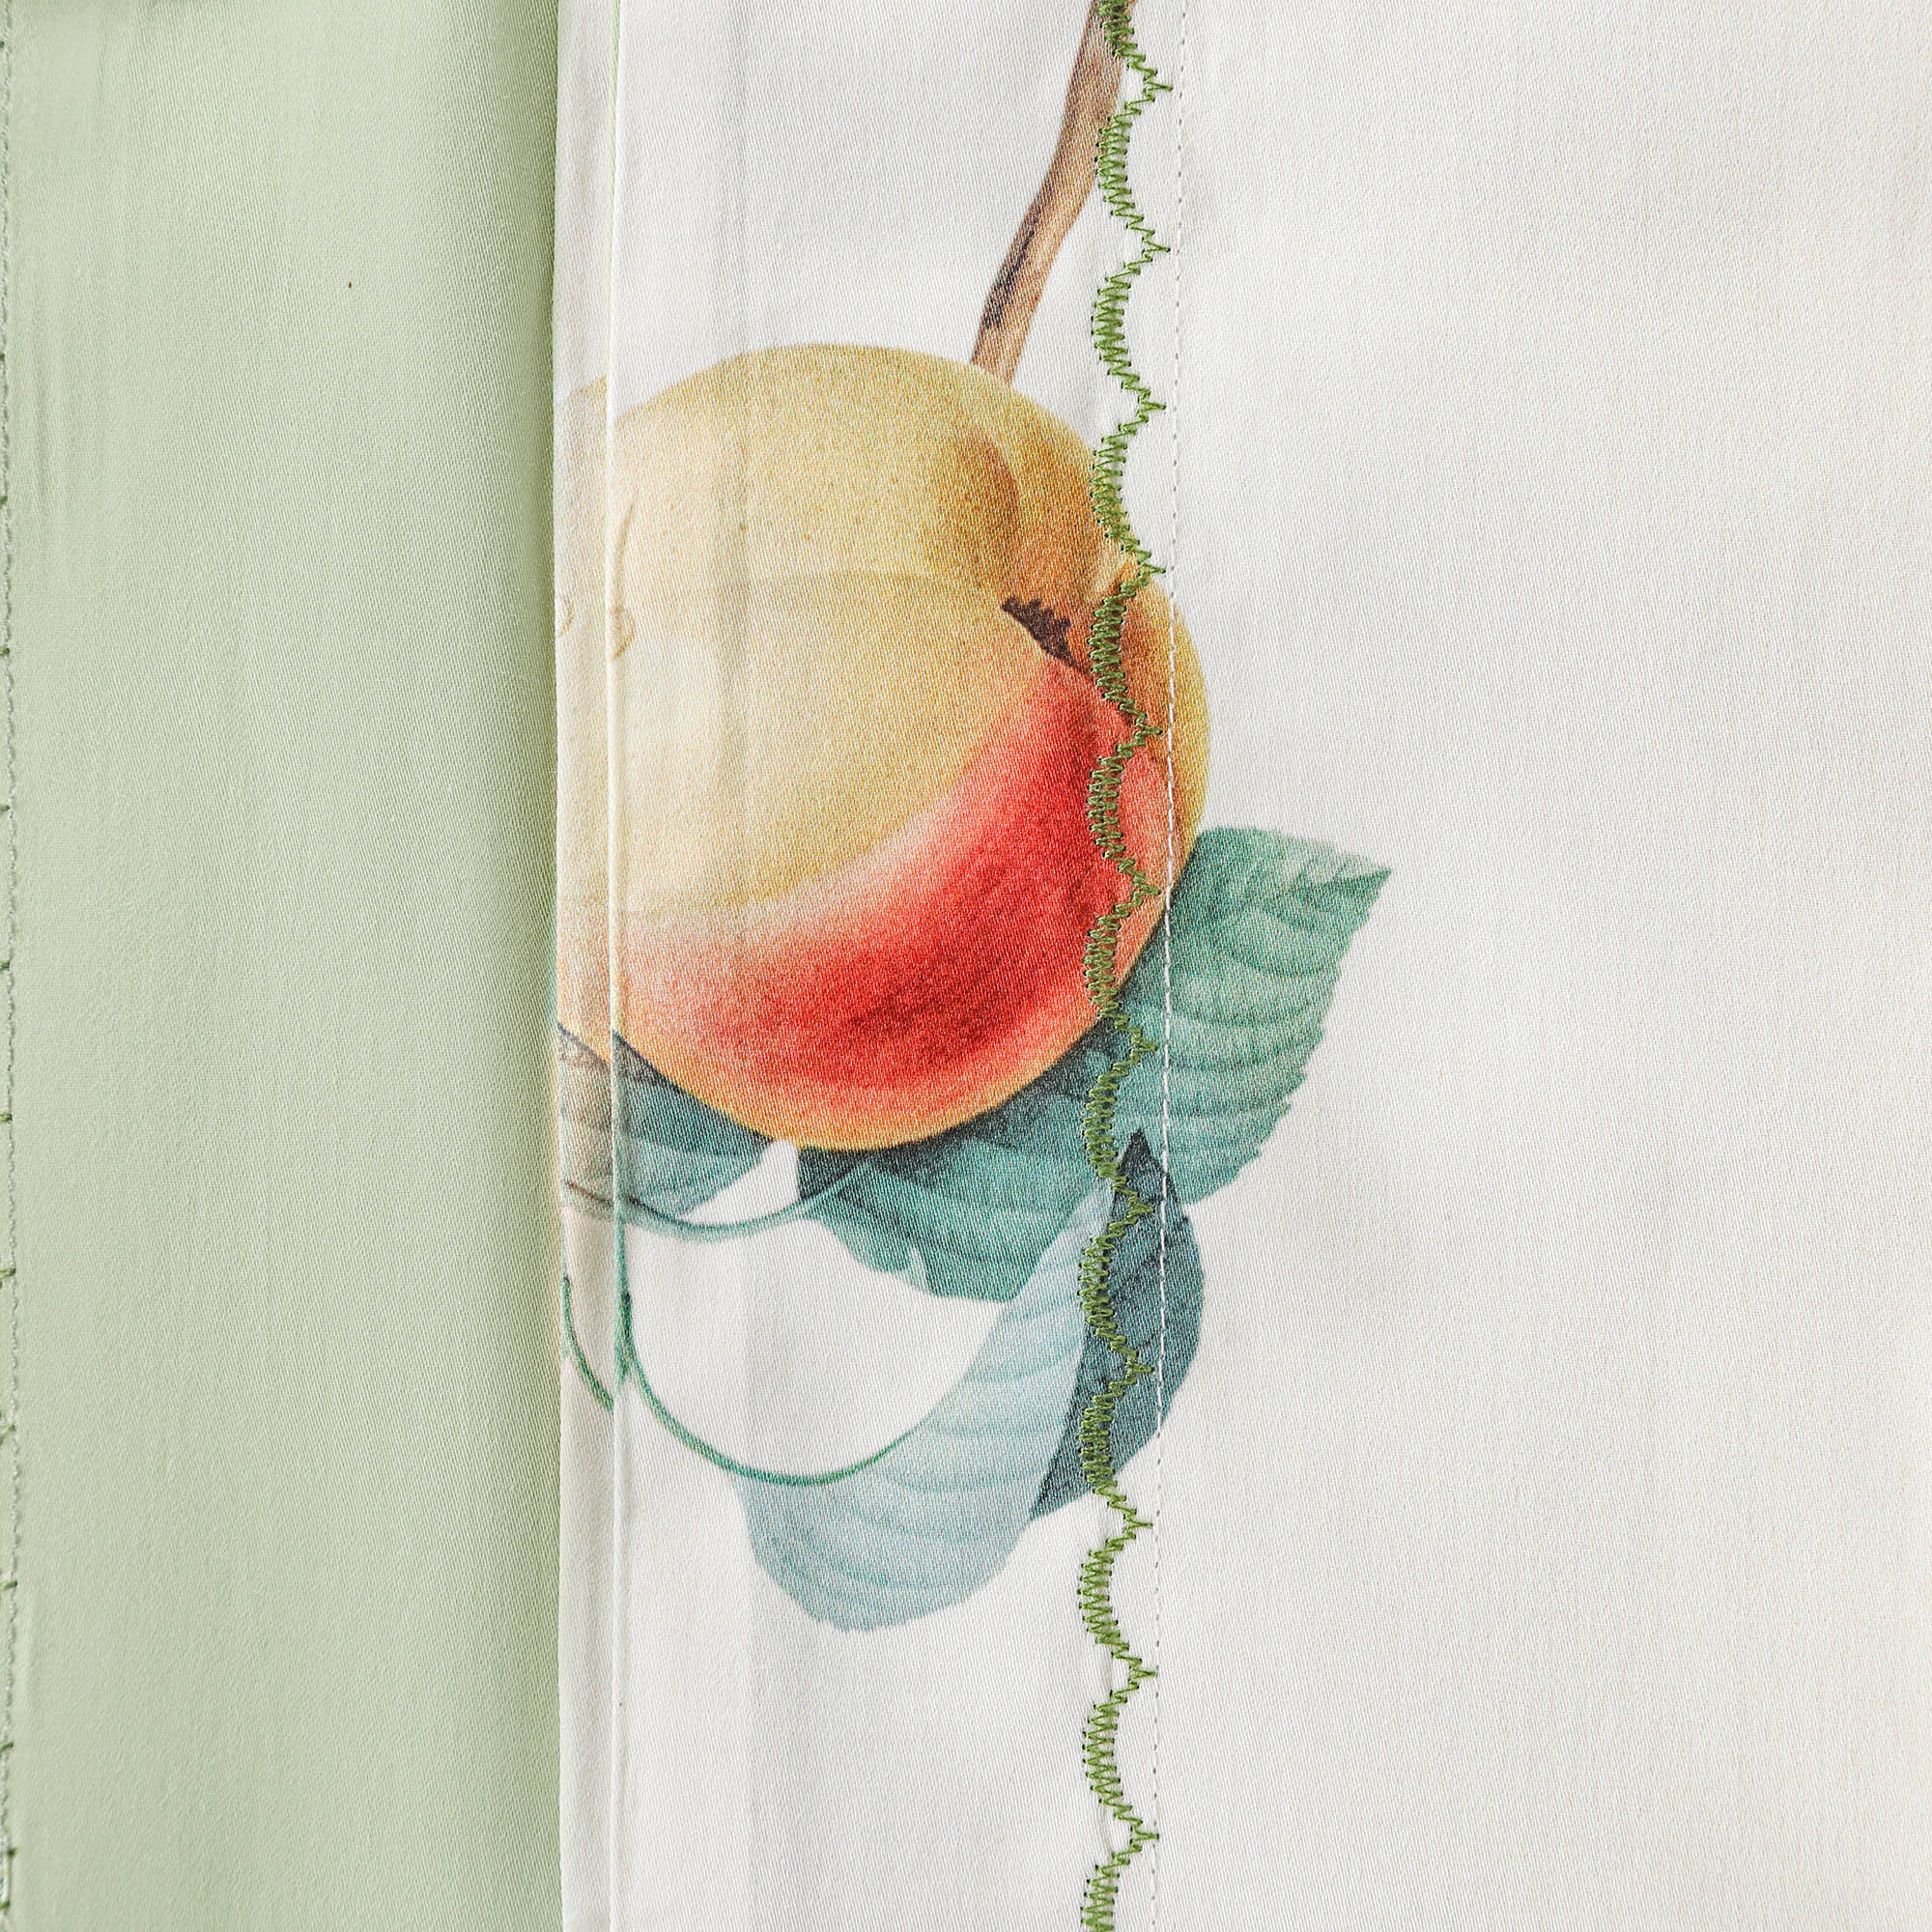 Постельный комплект Wonne Traum elegance apple gard pistach Полуторный, размер Полуторный - фото 5